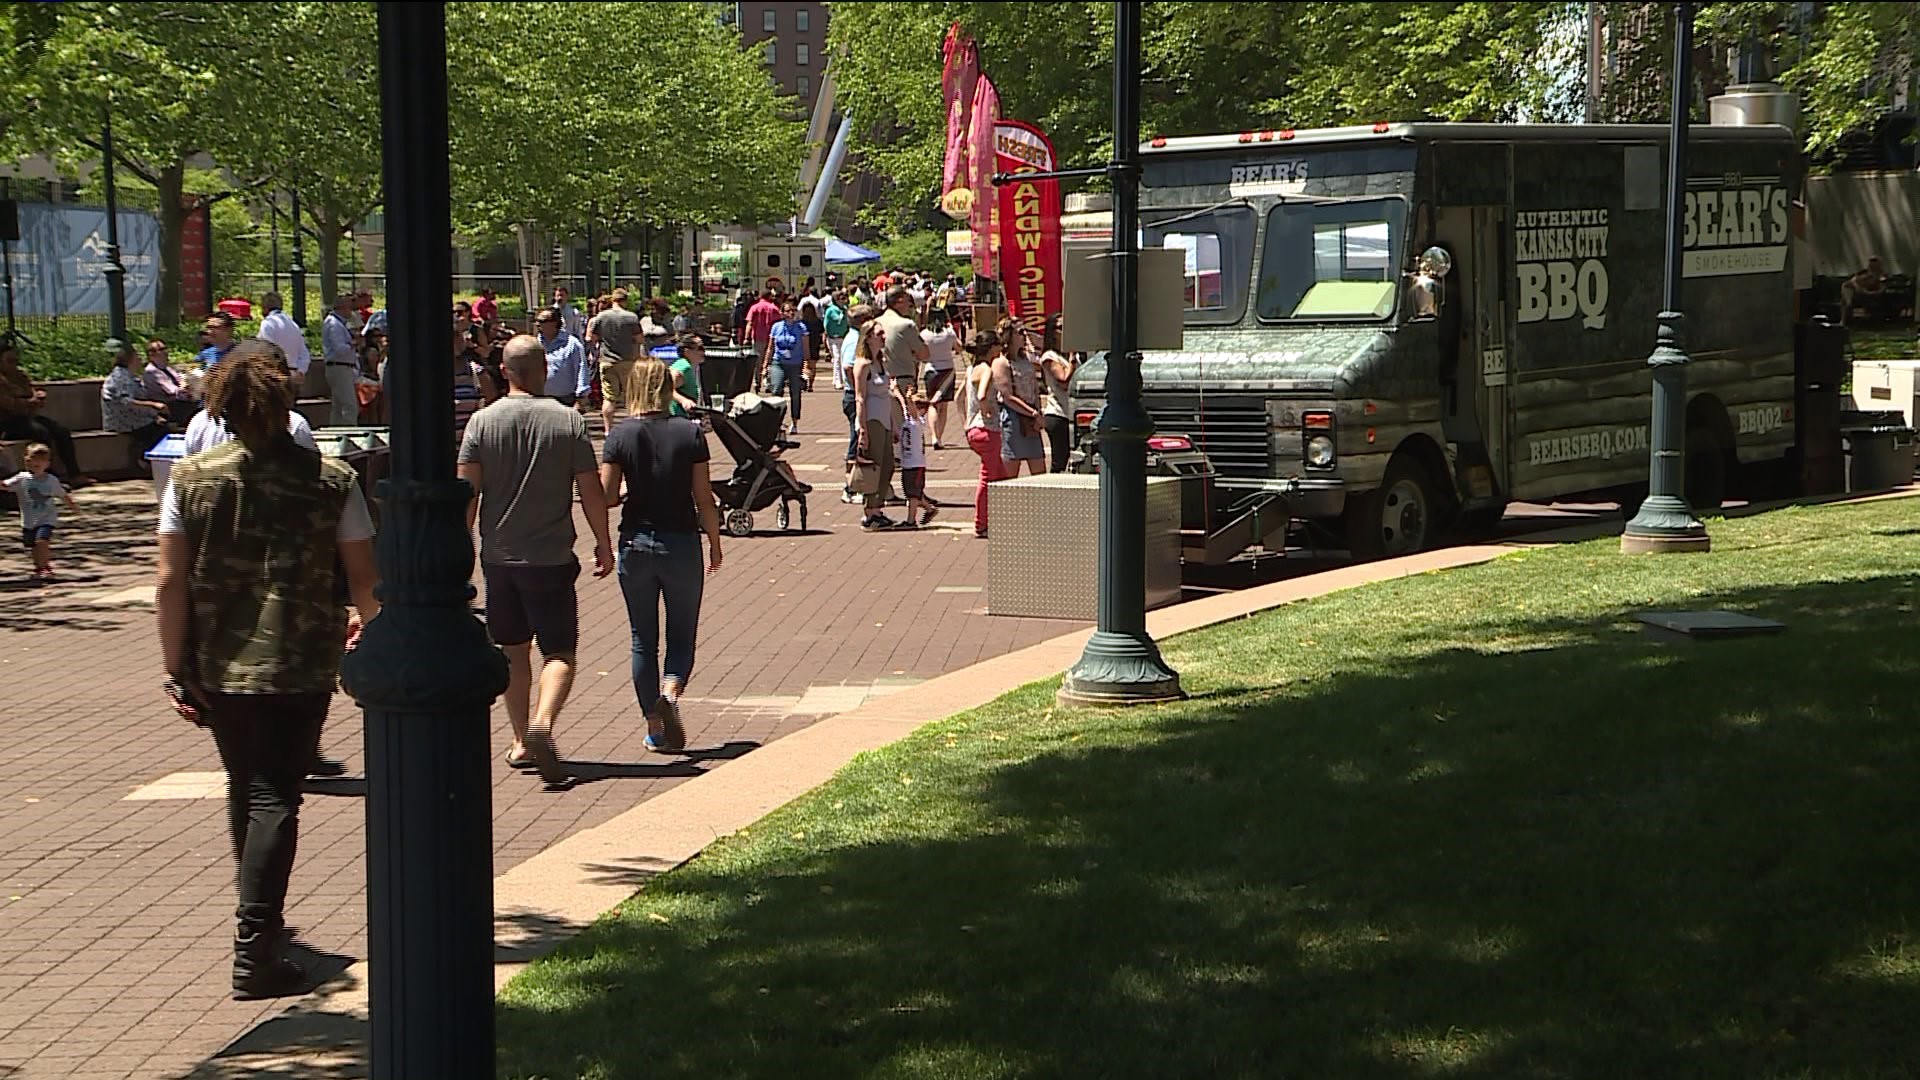 Hartford food truck festival kicks off